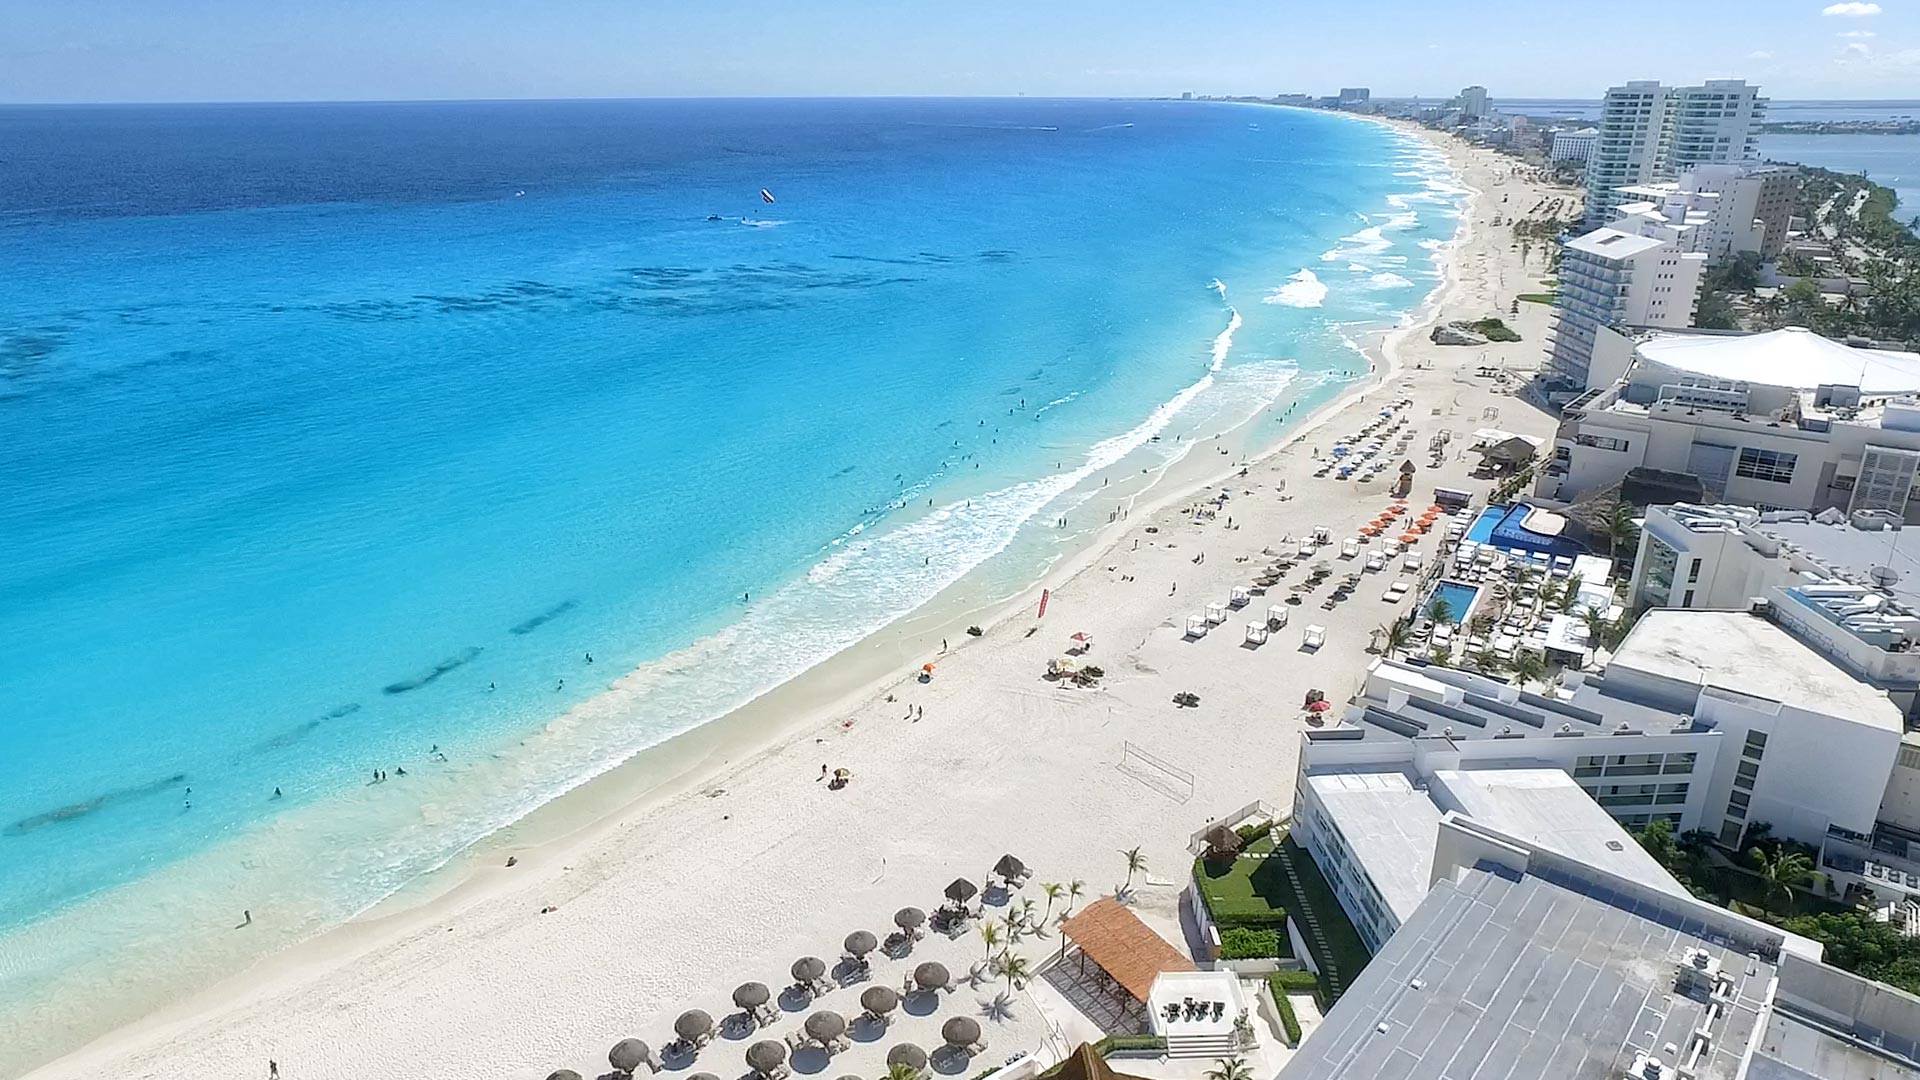 Vacaciones a Cancun / Imagen del perfil FB